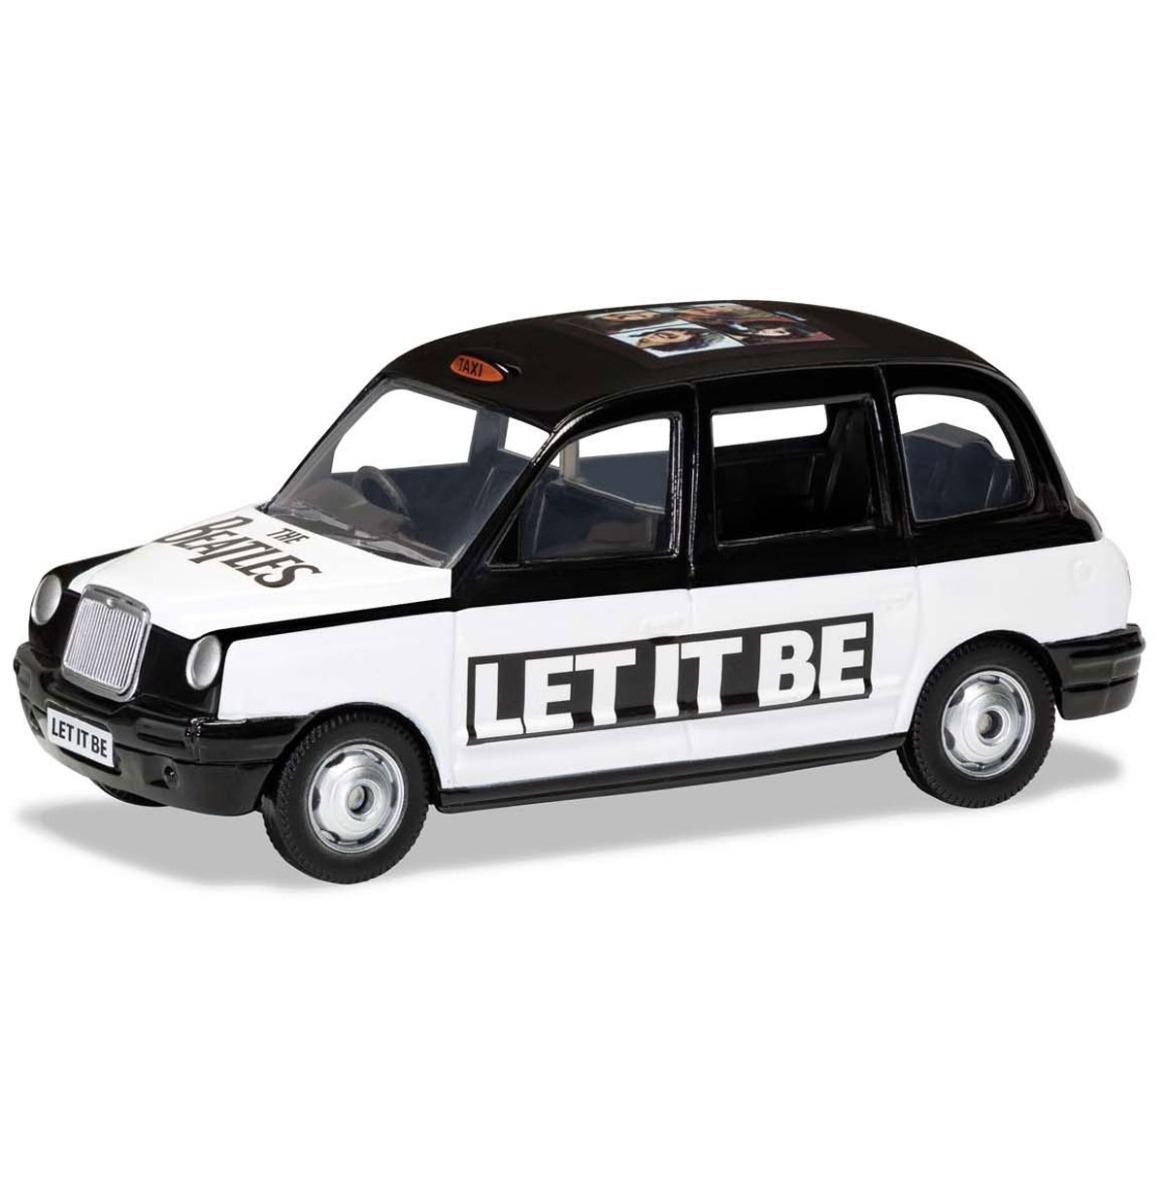 The Beatles - Let It Be London Taxi Die-Cast 1:36 Corgi